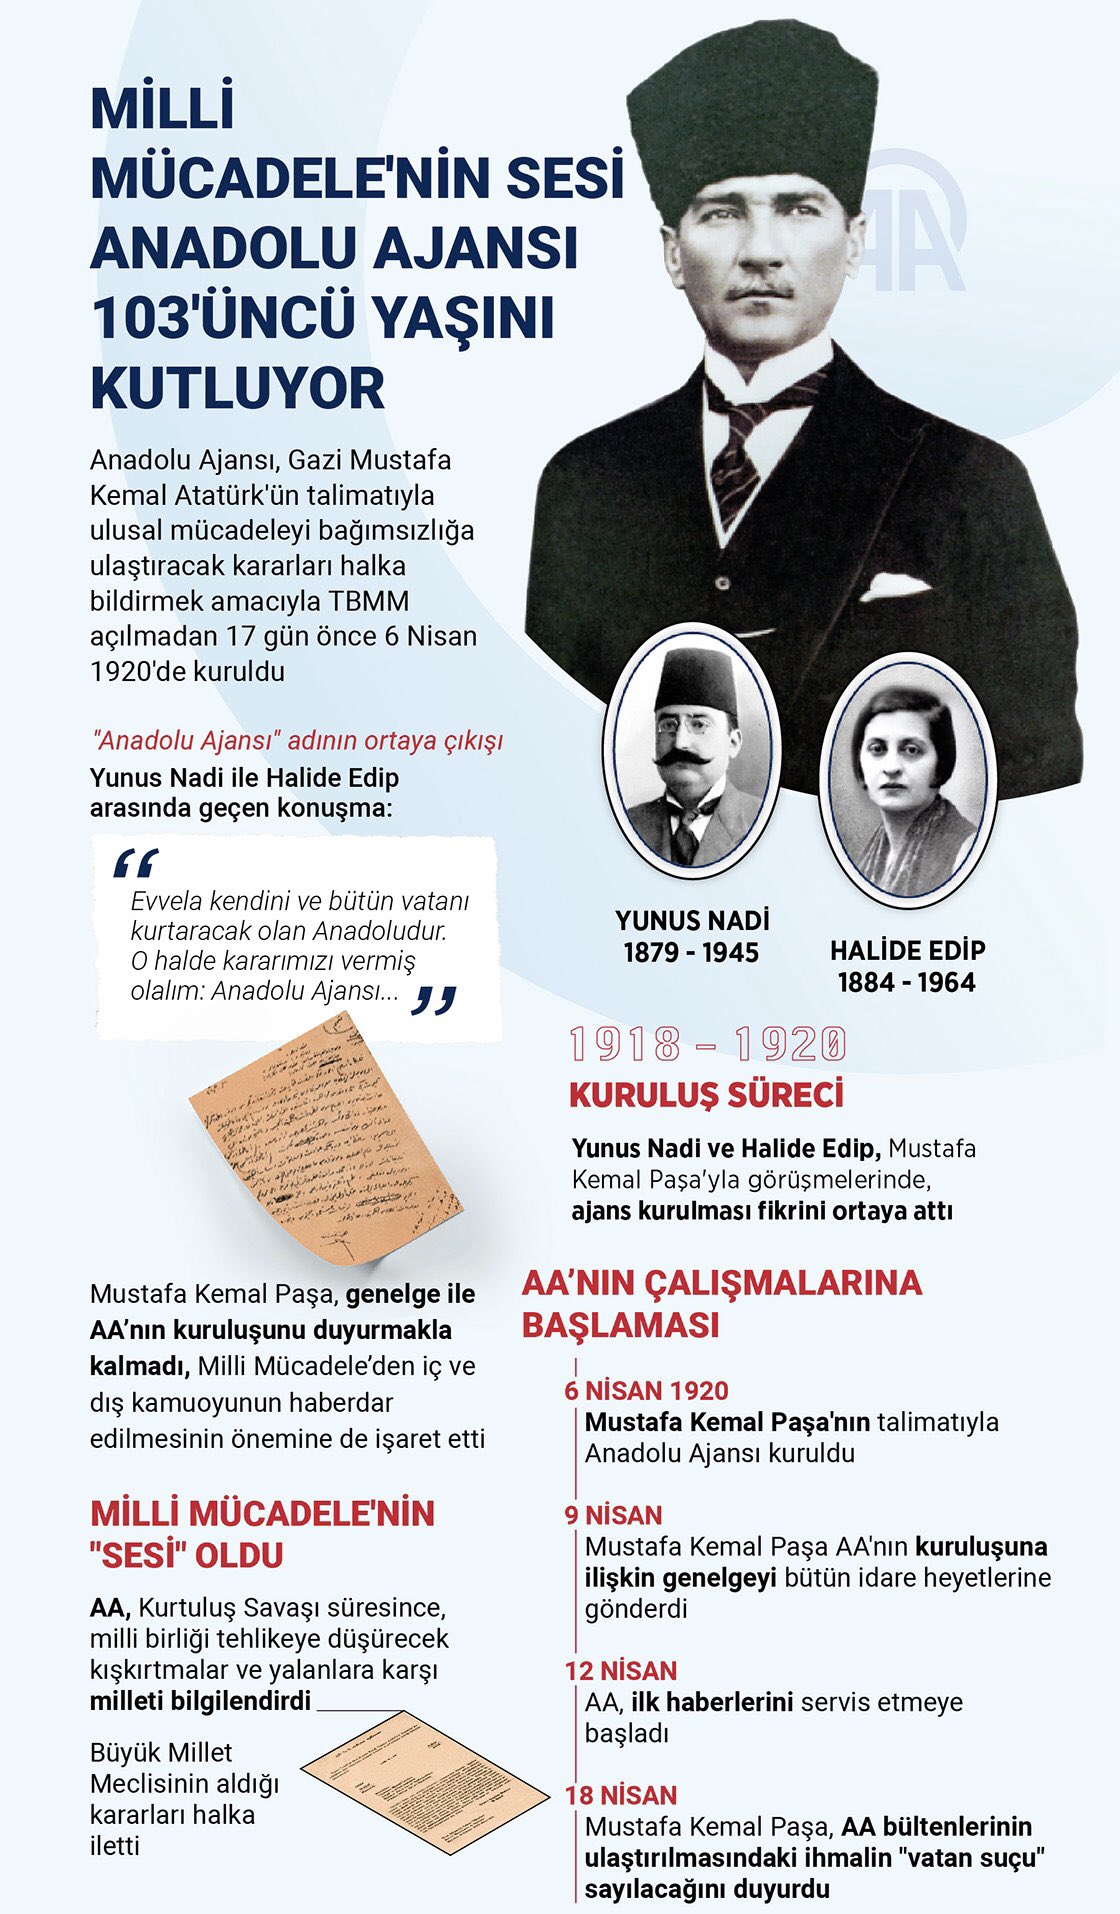 Gazi Mareşal Mustafa Kemal Atatürk’ün talimatıyla kurulan Anadolu Ajansının kuruluş yıldönümü kutlu olsun.